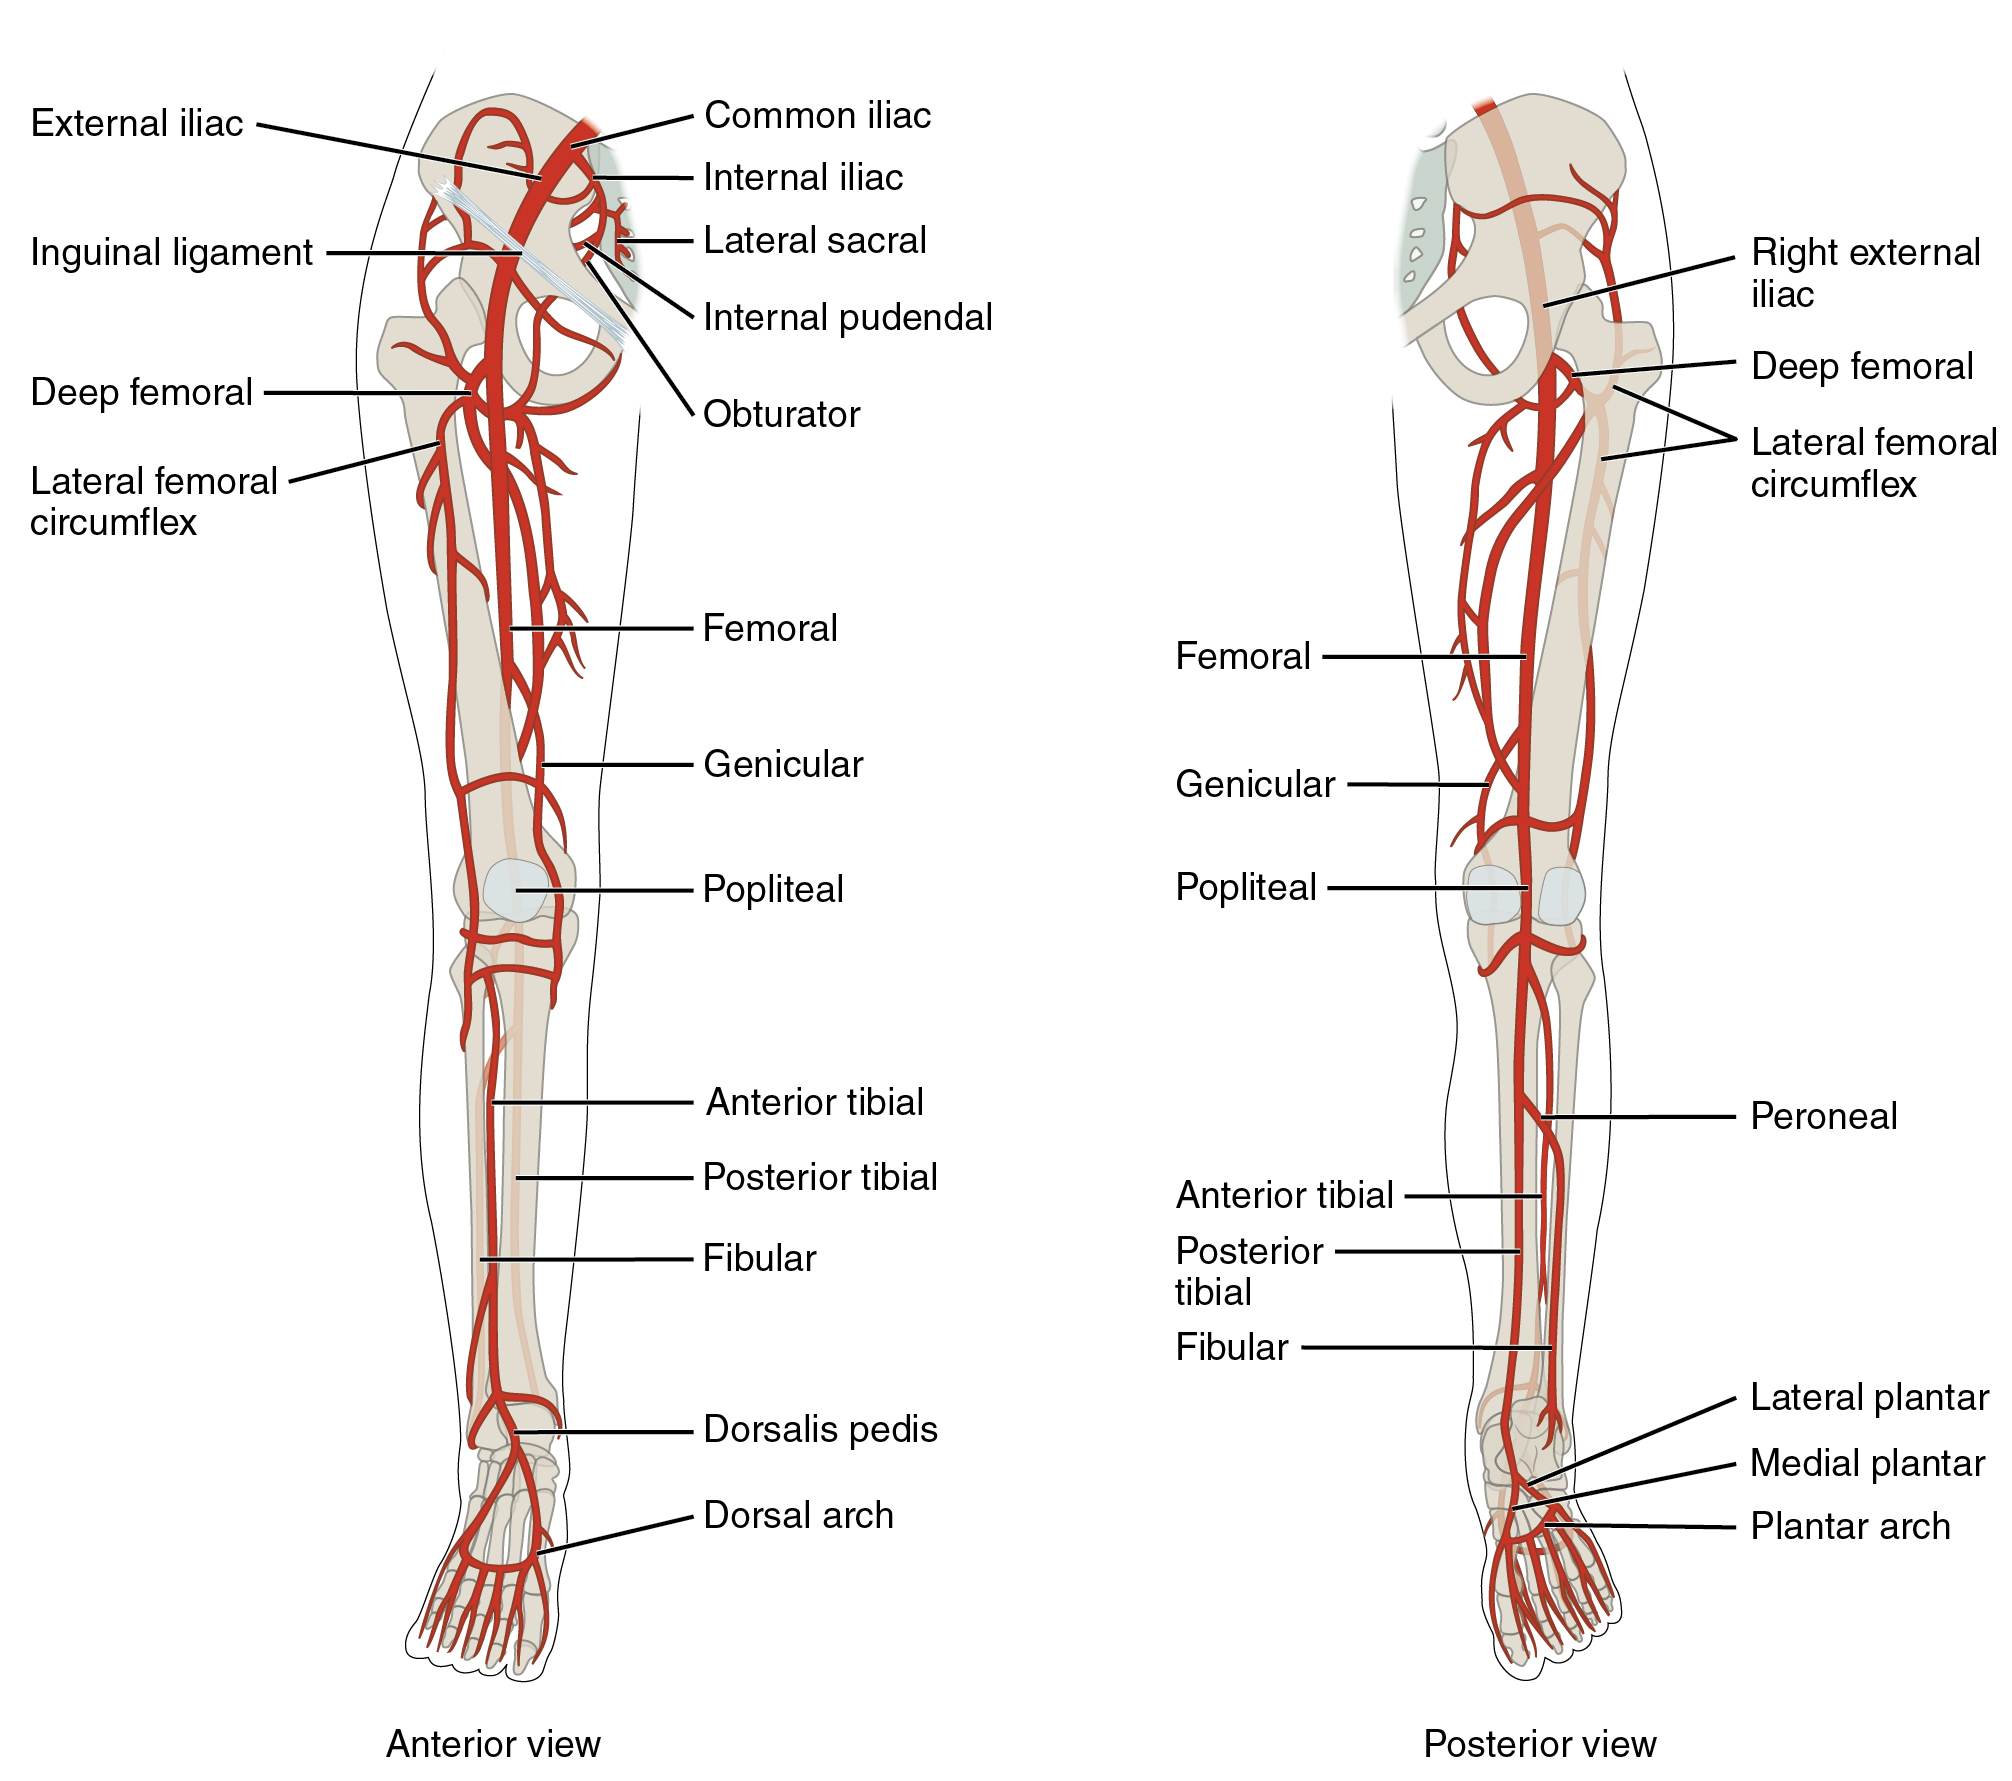 O painel esquerdo mostra a visão anterior das artérias nas pernas e o painel direito mostra a visão posterior.